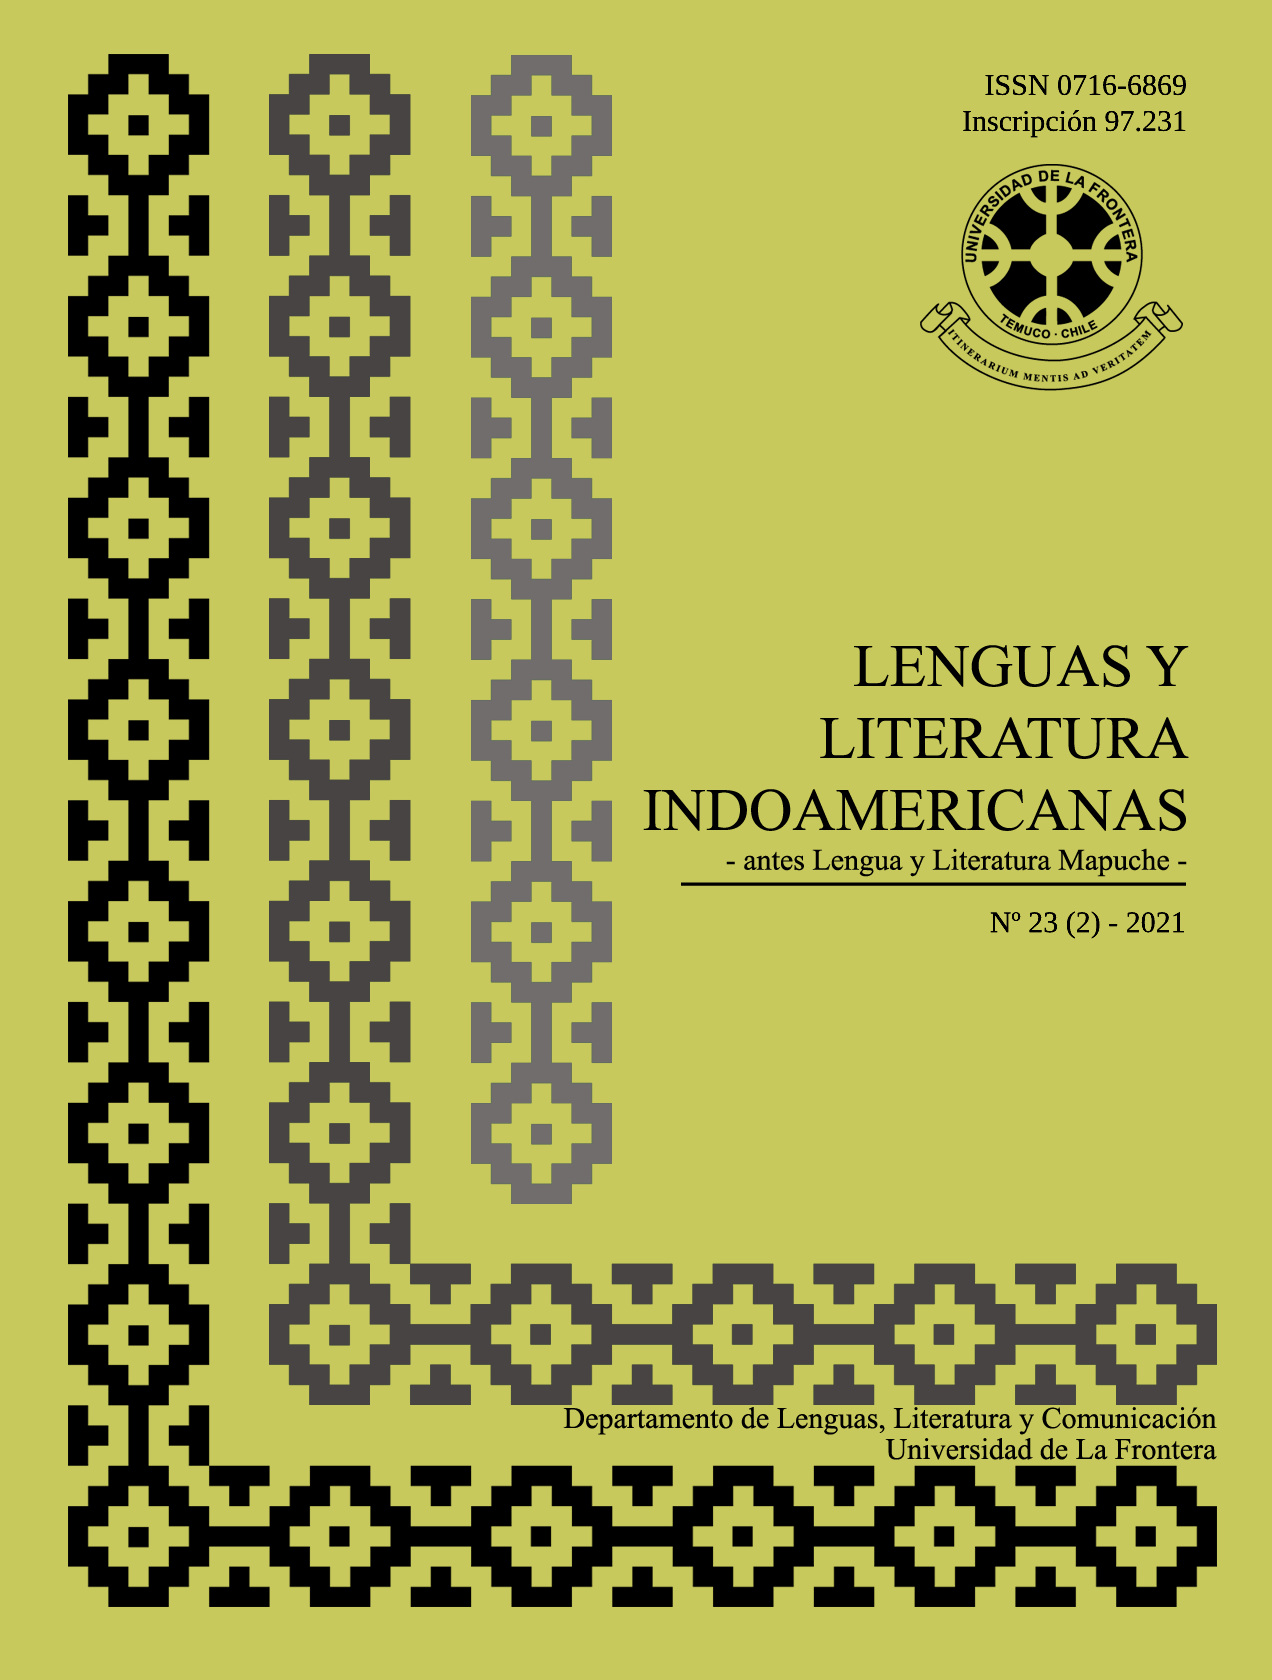 					Ver Vol. 23 Núm. 2 (2021): Revista de Lenguas y Literatura Indoamericanas (RLLI)
				